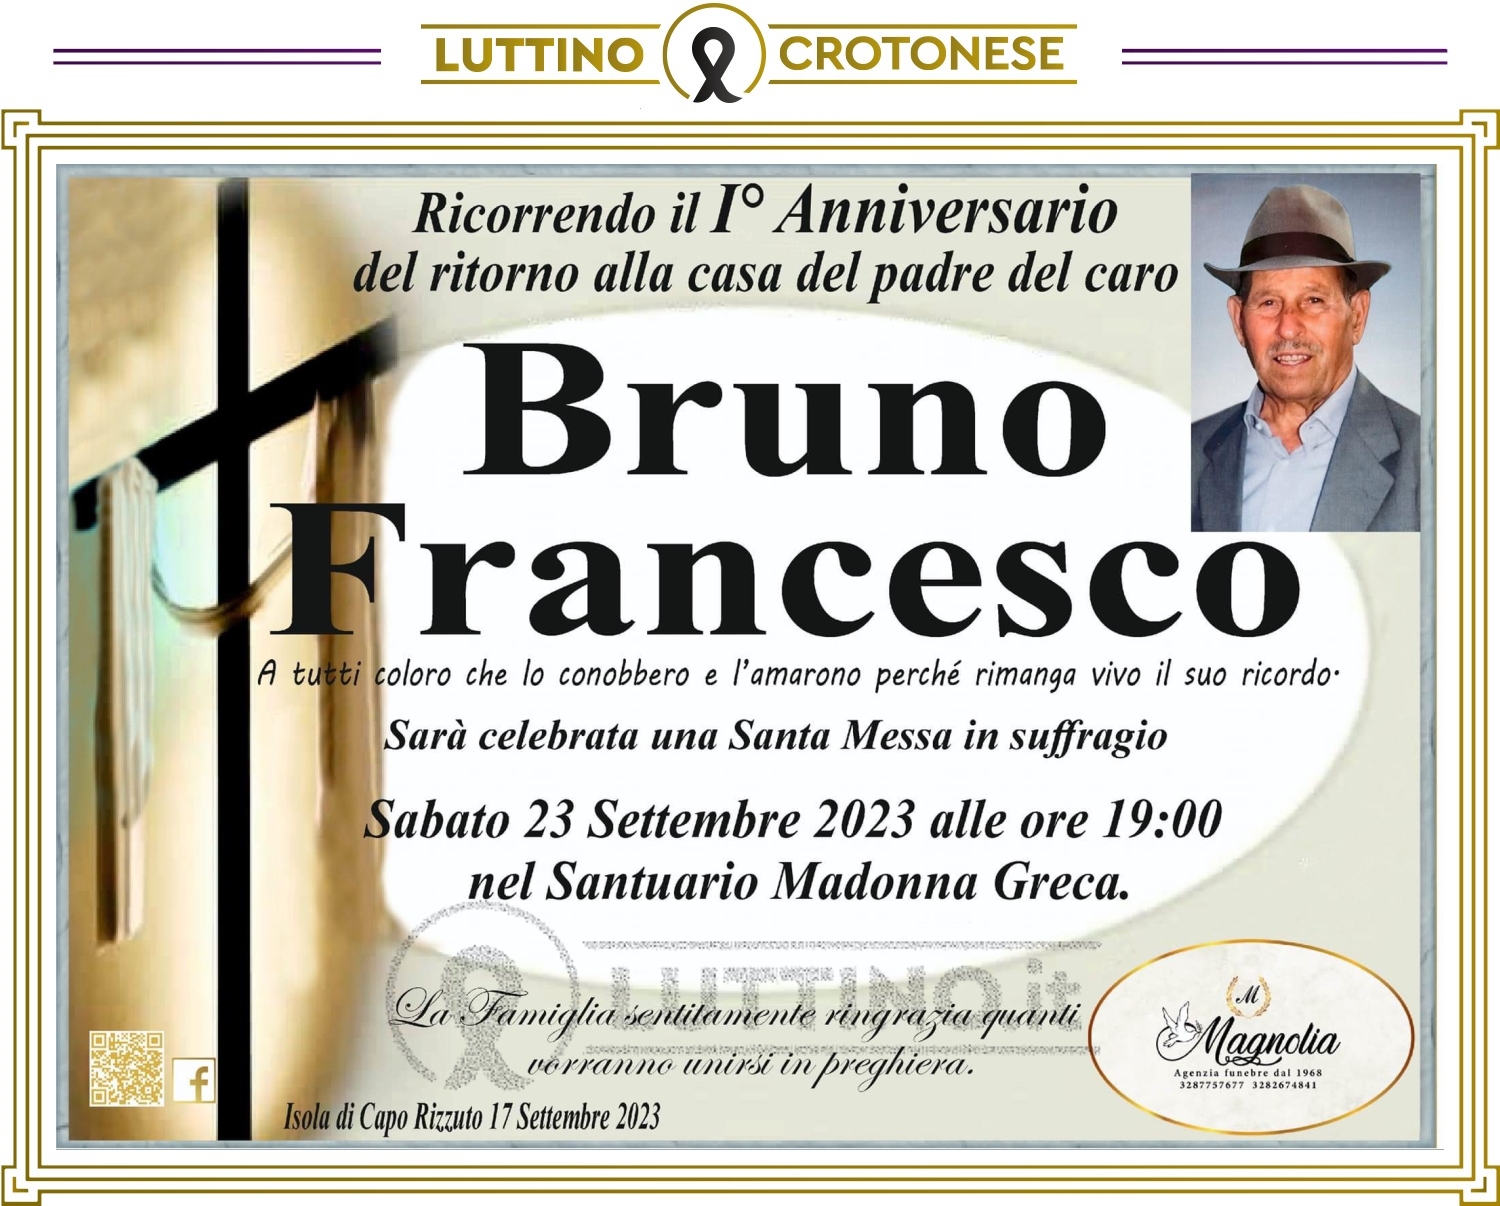 Francesco Bruno